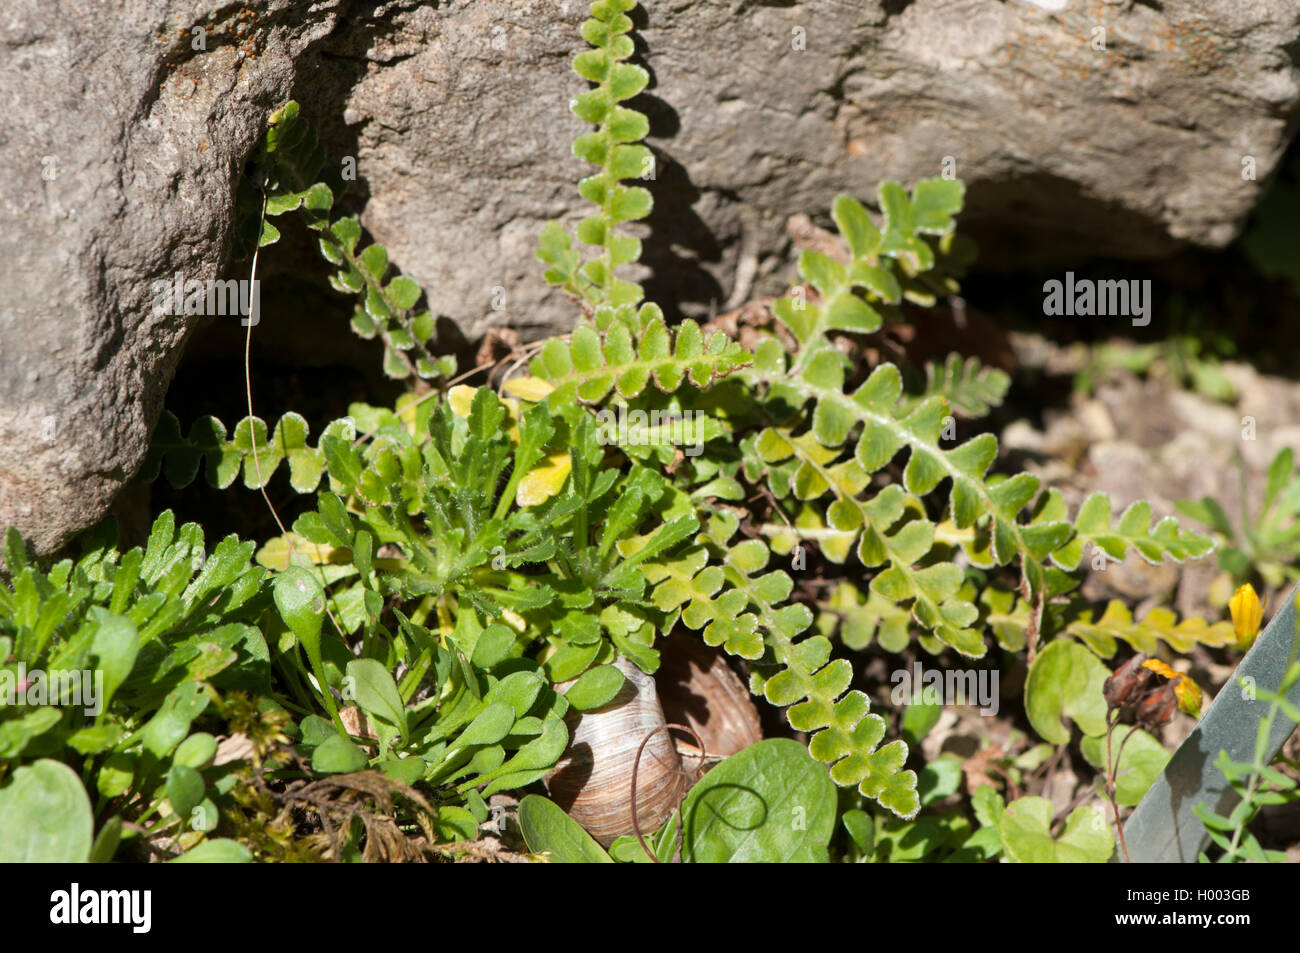 Gemeinsame spleenwort, Rustyback (Asplenium ceterach, Ceterach officinarum), wächst auf Felsen, Deutschland Stockfoto